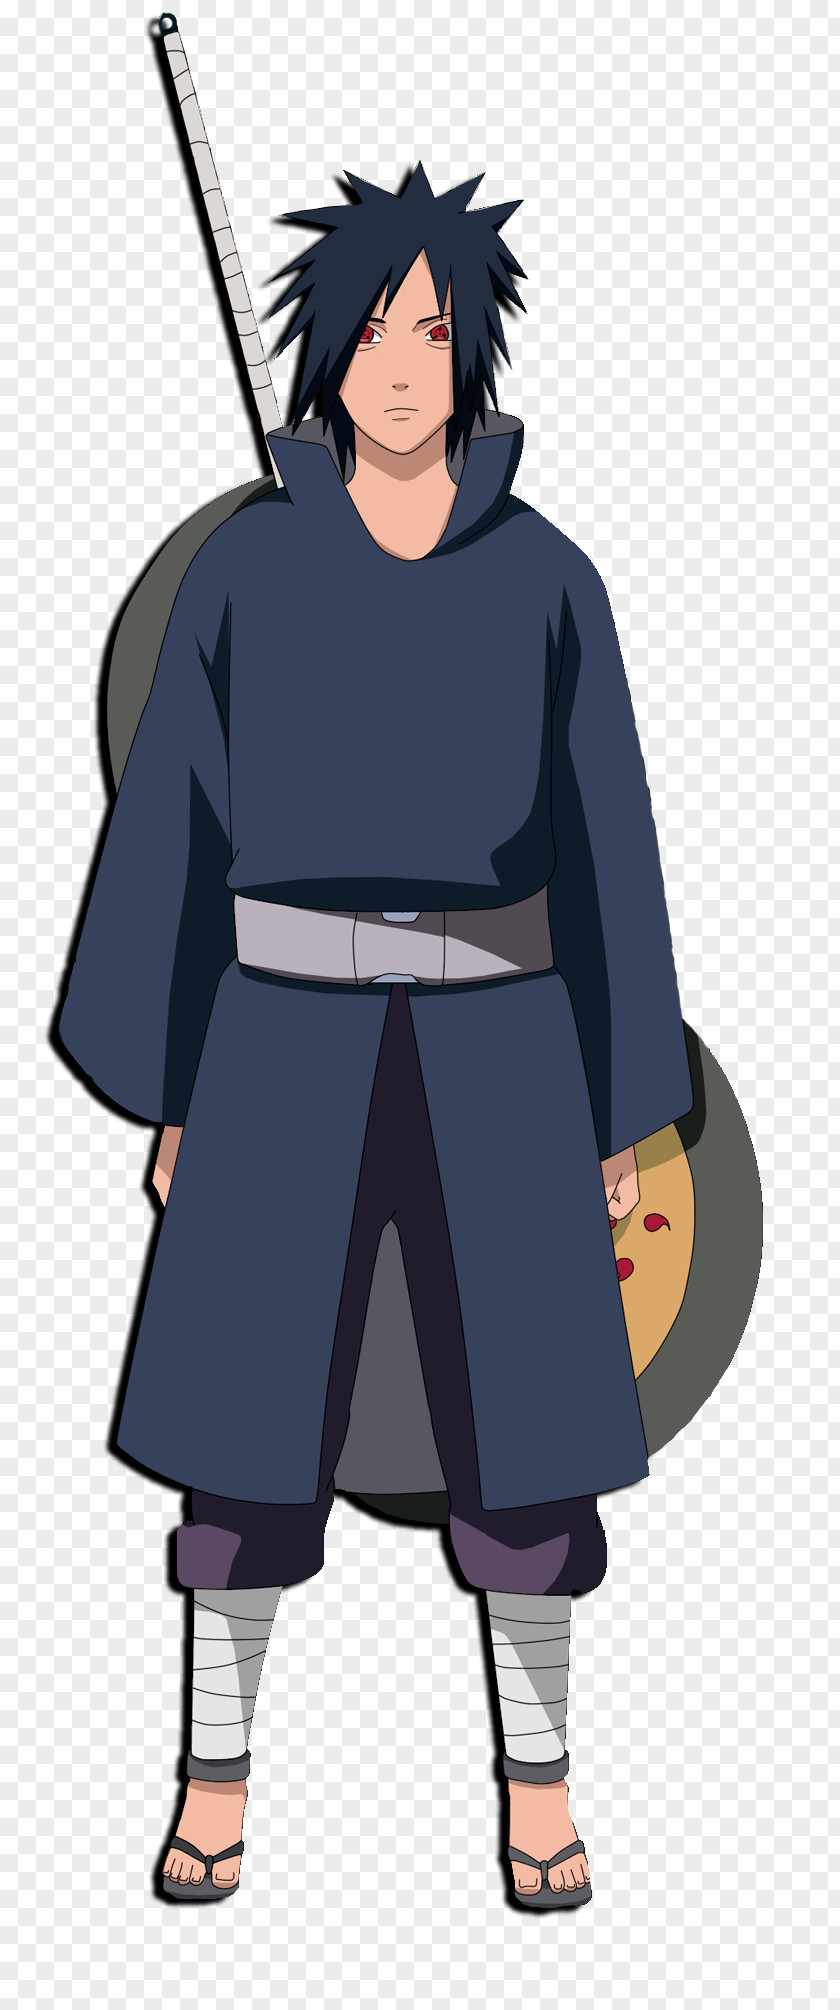 Naruto Pain Sasuke Uchiha Itachi Madara Obito Hashirama Senju PNG